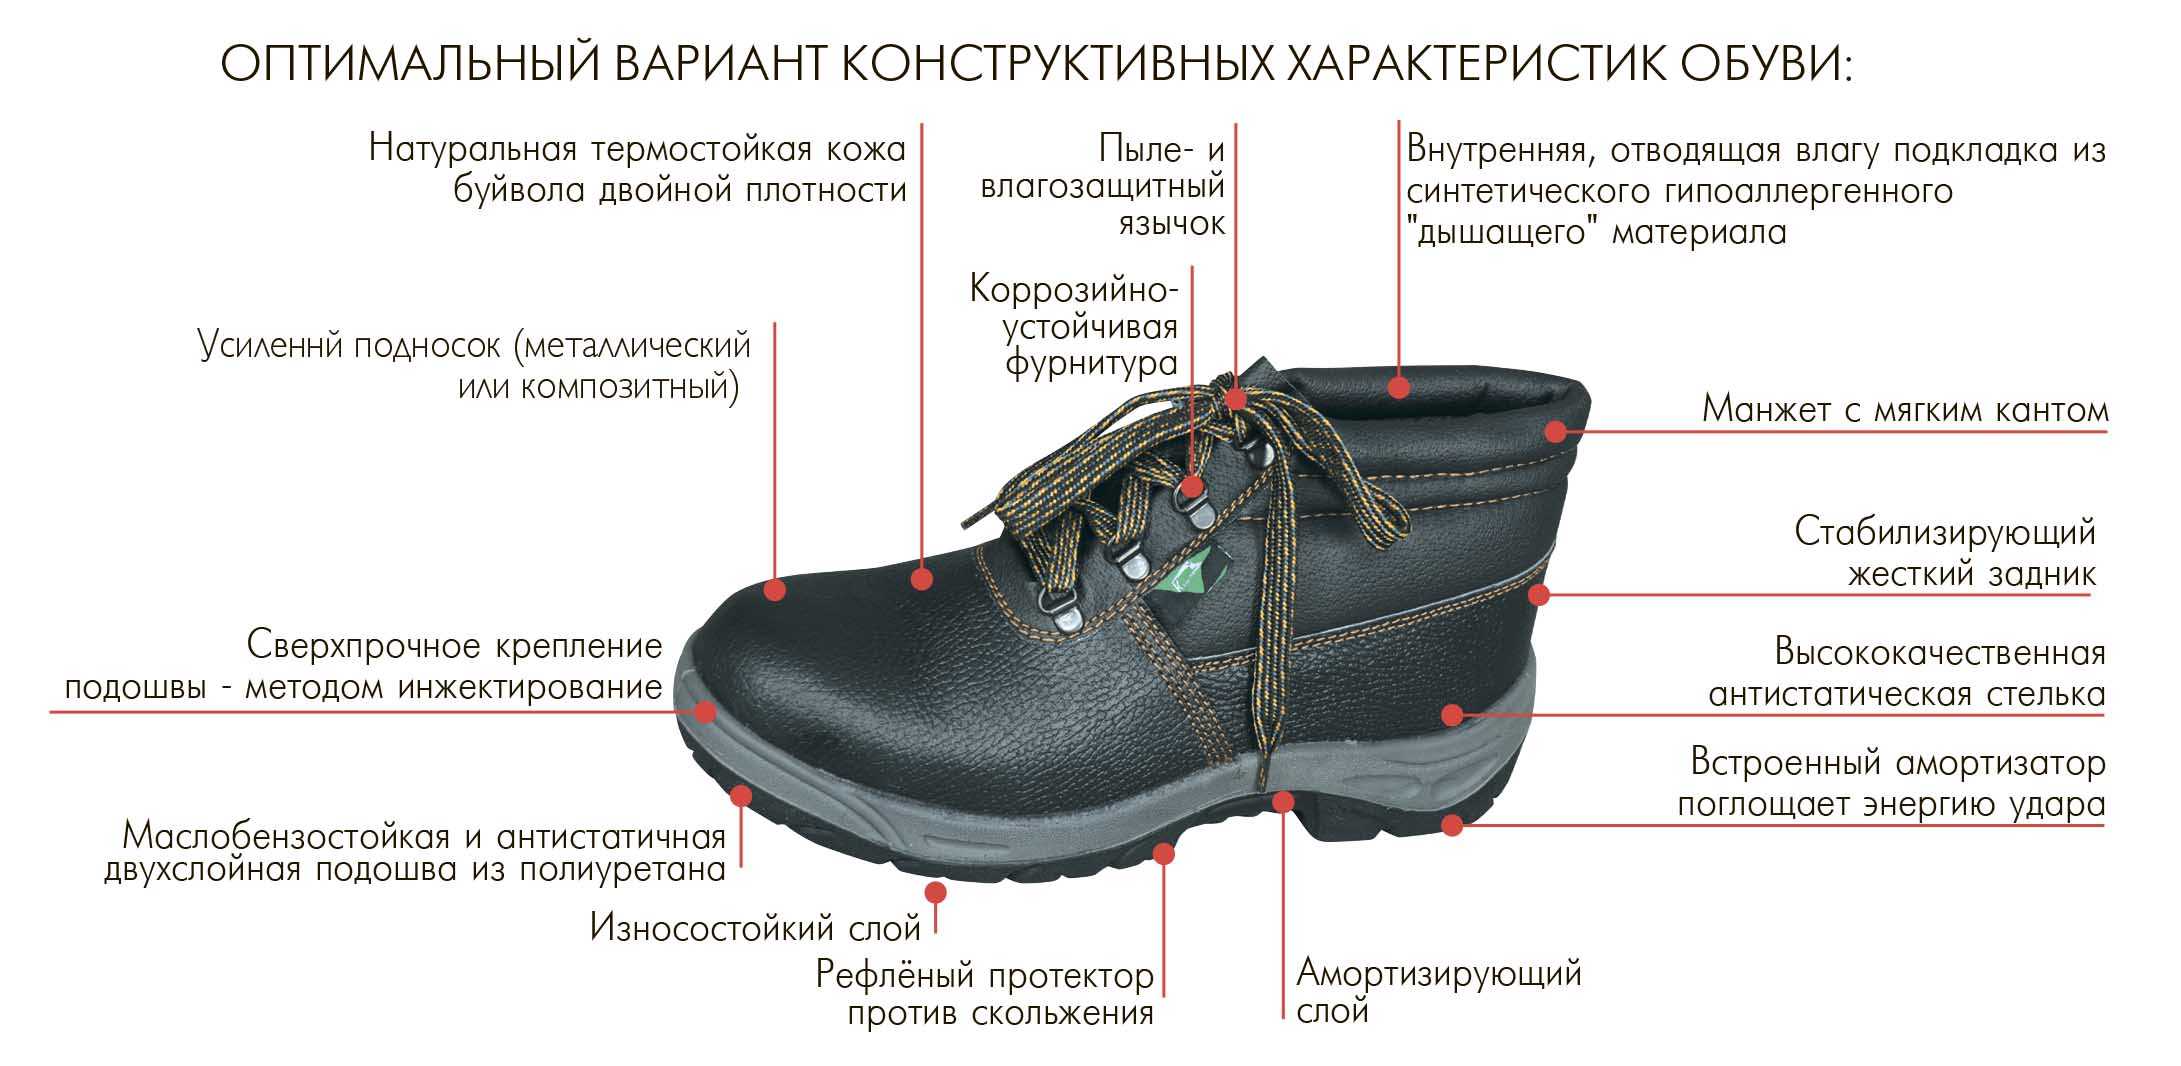 Гост подошвы. Строение ботинка. Специальная обувь для рабочих. Ботинки для производства.